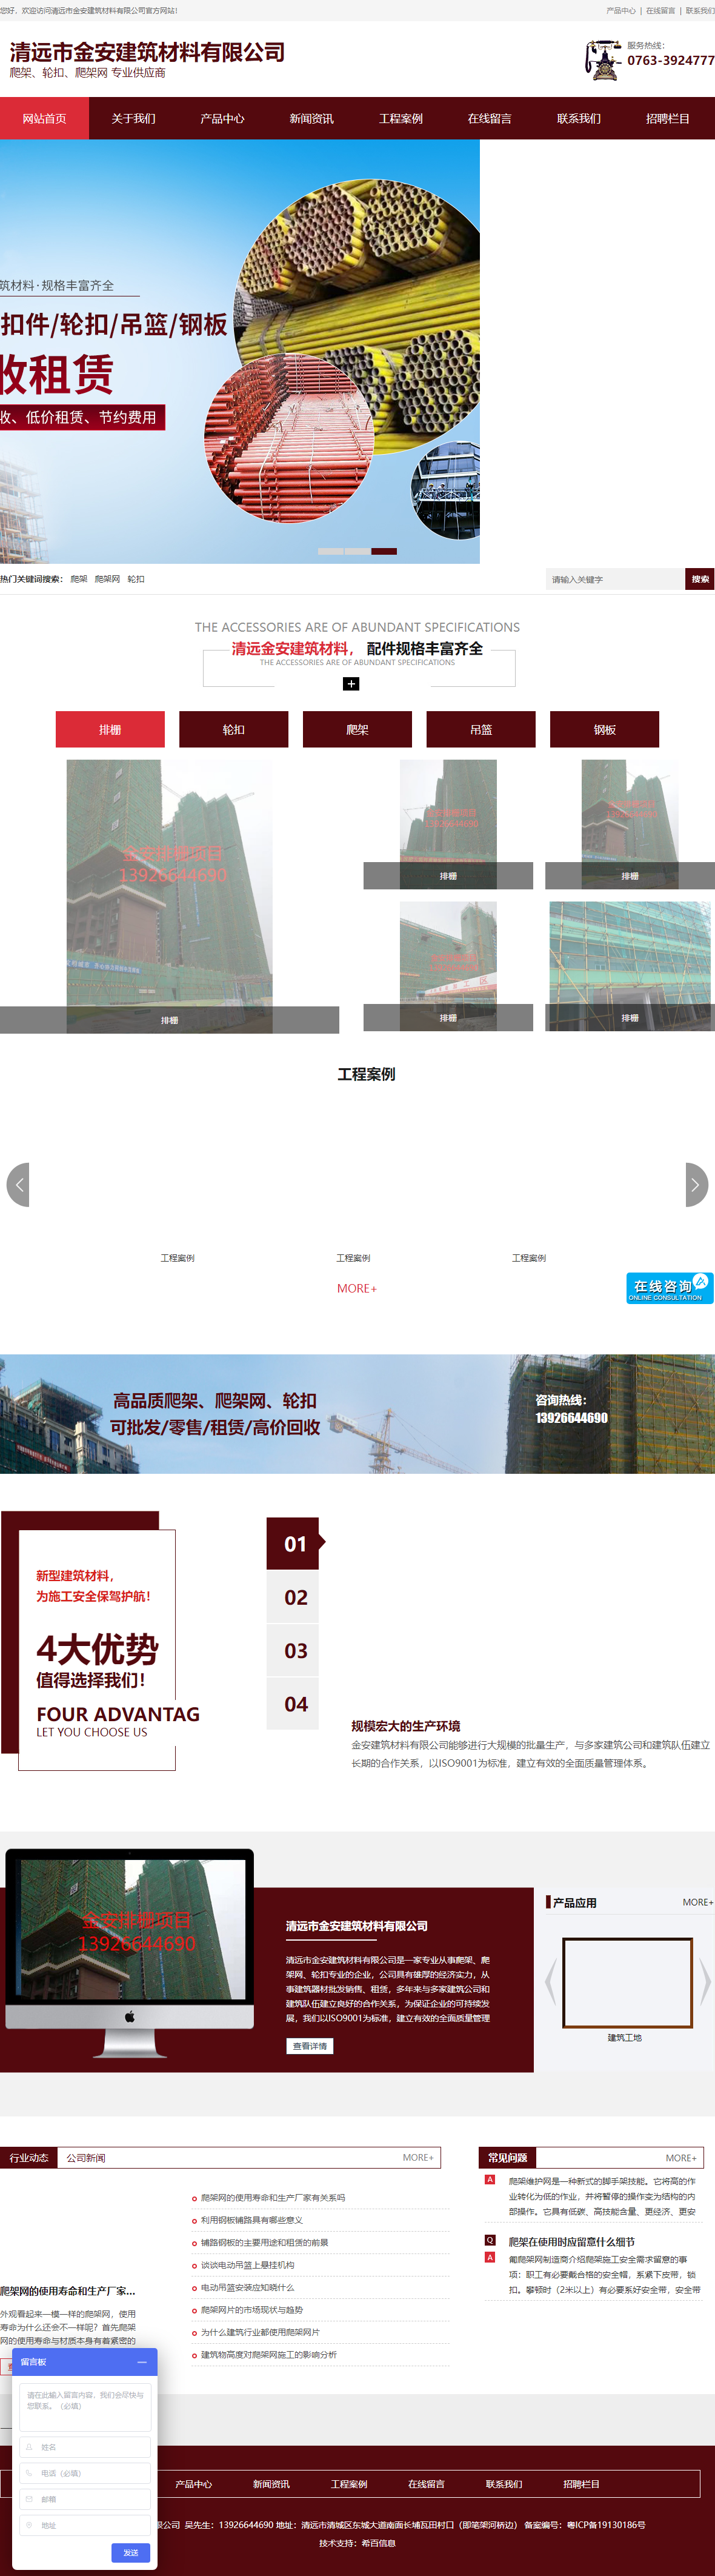 清远市金安建筑材料有限公司网站案例